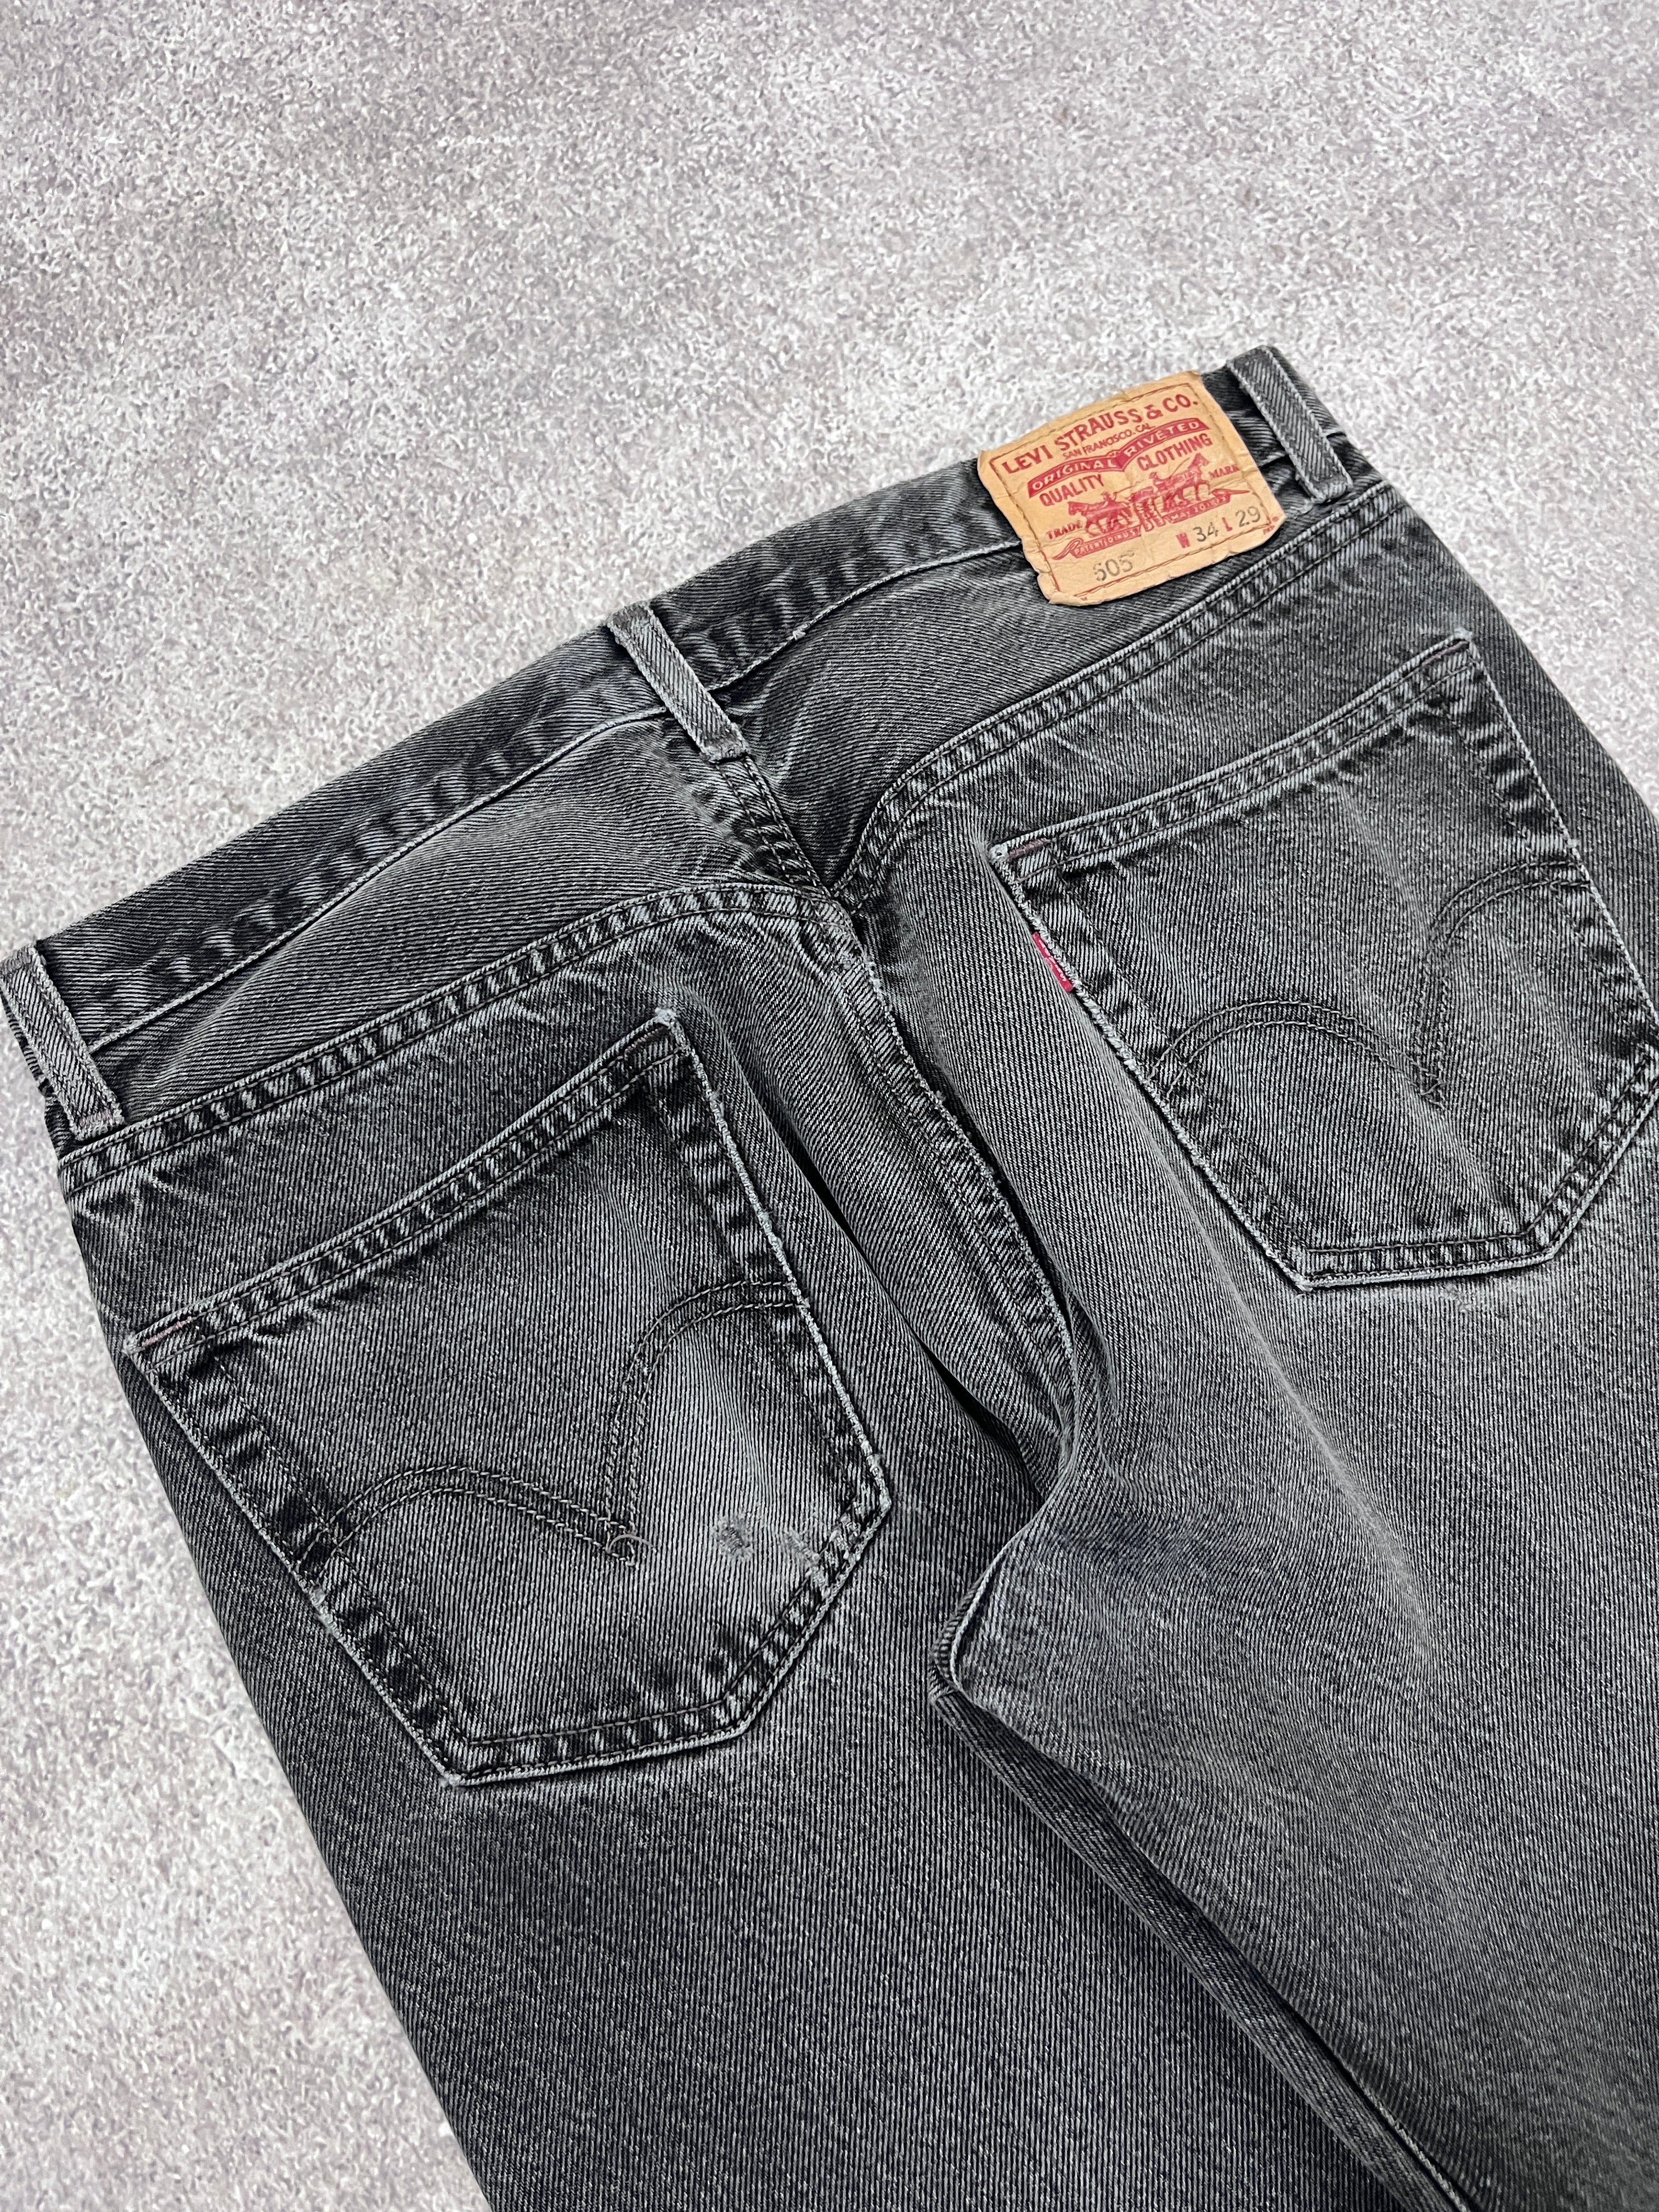 Vintage Levi 505 Denim Jeans // W34 L29 - RHAGHOUSE VINTAGE